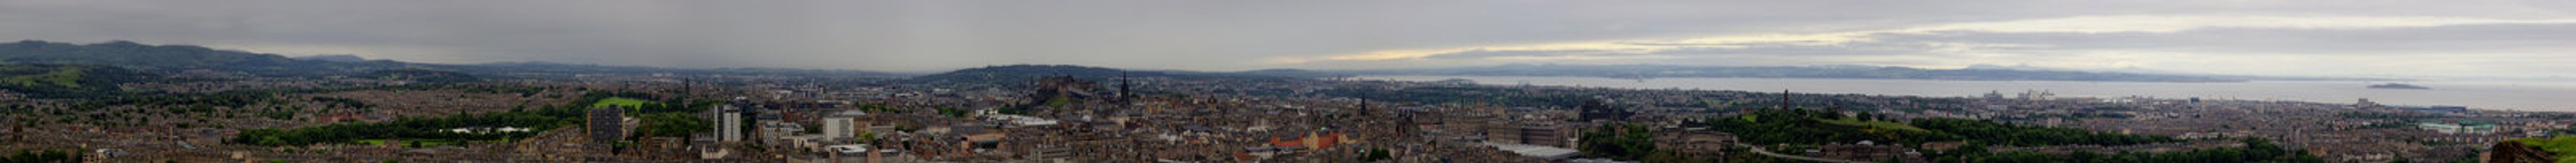 panoramic view on Edinburgh skyline from Arthur's Seat, Scotland